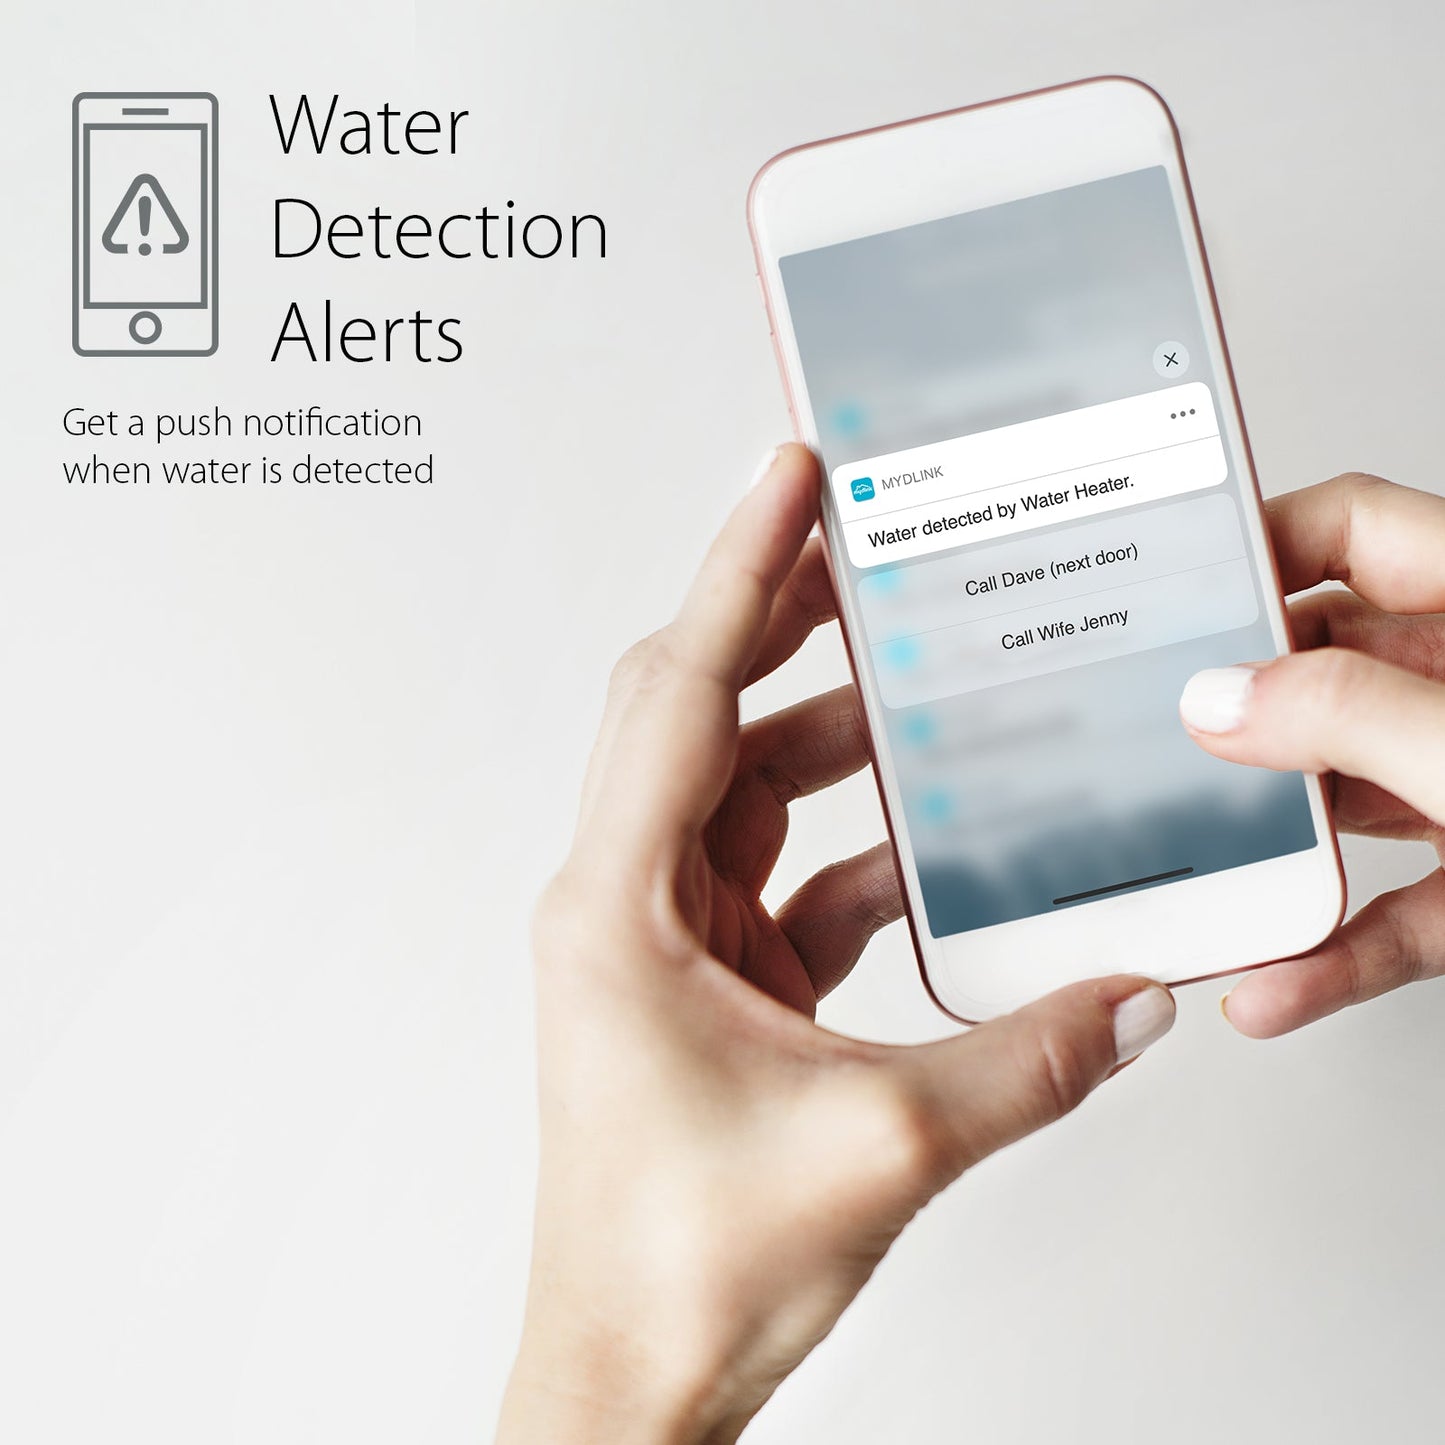 [Certified Refurbished] Whole Home Smart Wi-Fi Water Leak Sensor Starter Kit - DCH-S1621KT/RE